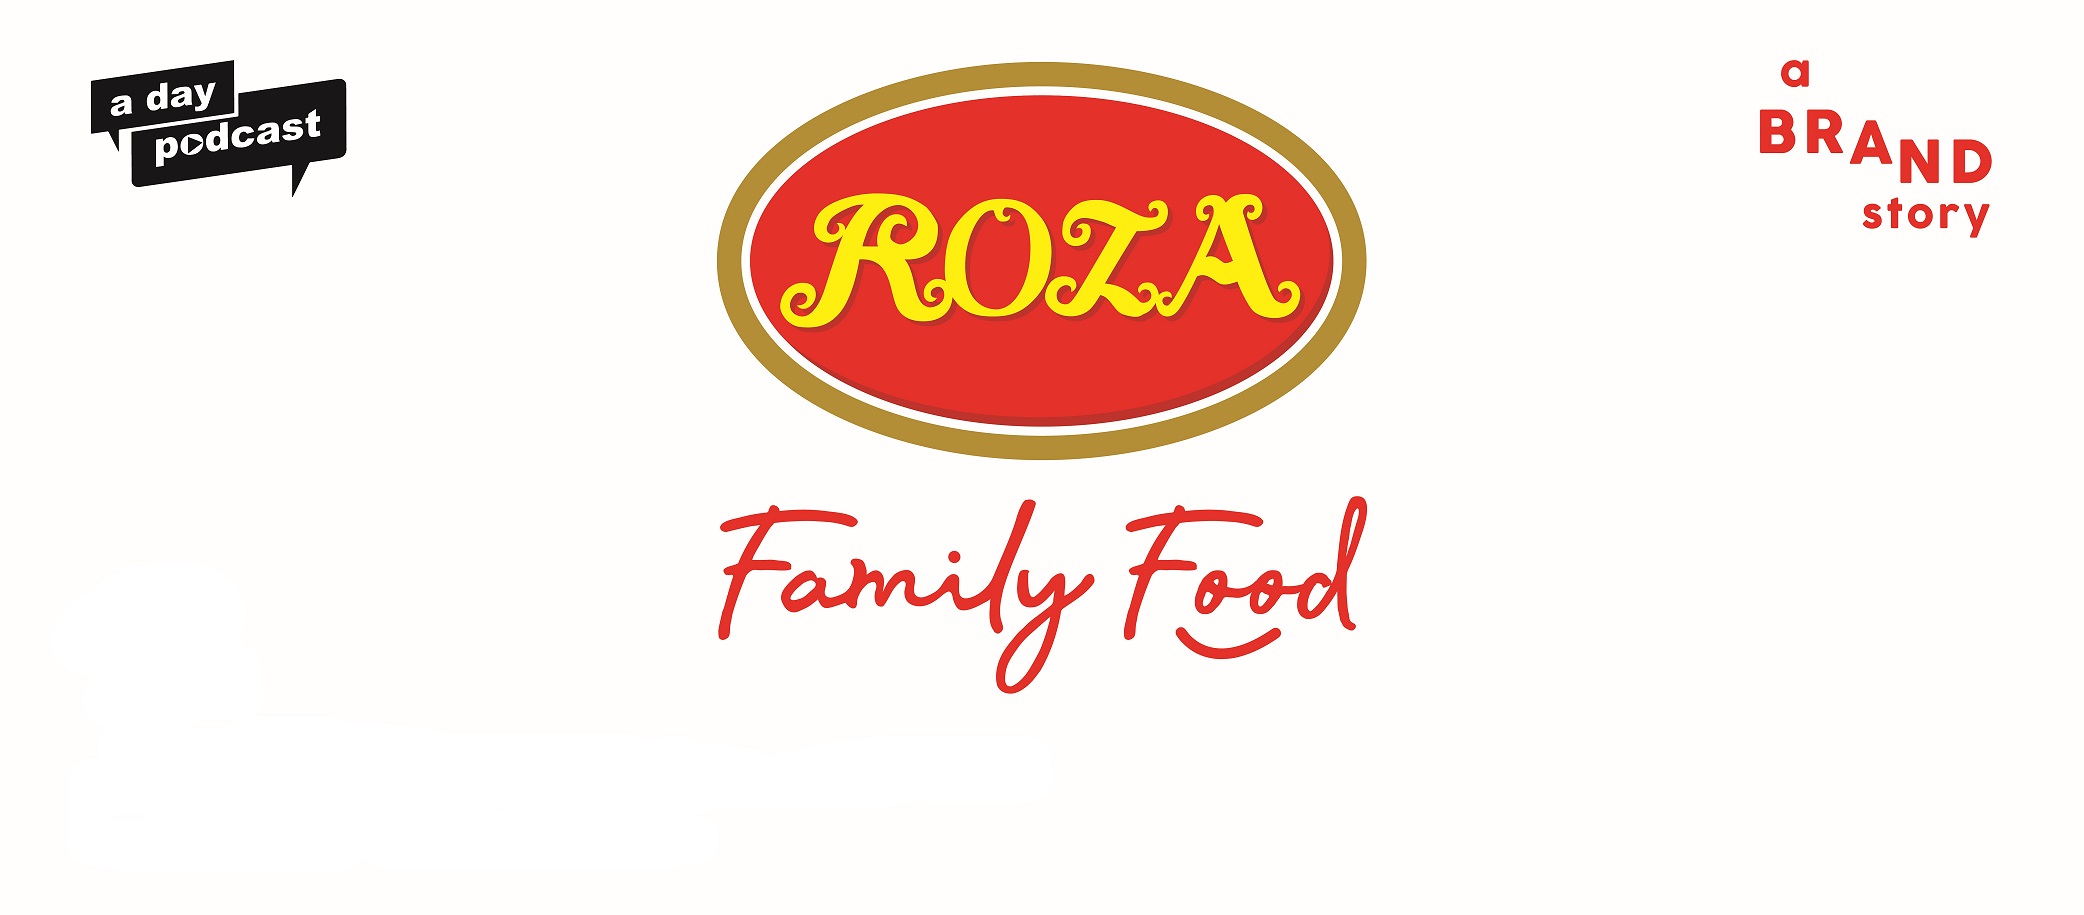 Roza แบรนด์ที่เชื่อว่าพลังของชีวิตเริ่มจากช่วงเวลาดีๆ บนโต๊ะกินข้าวกับครอบครัว | a brand story EP.10